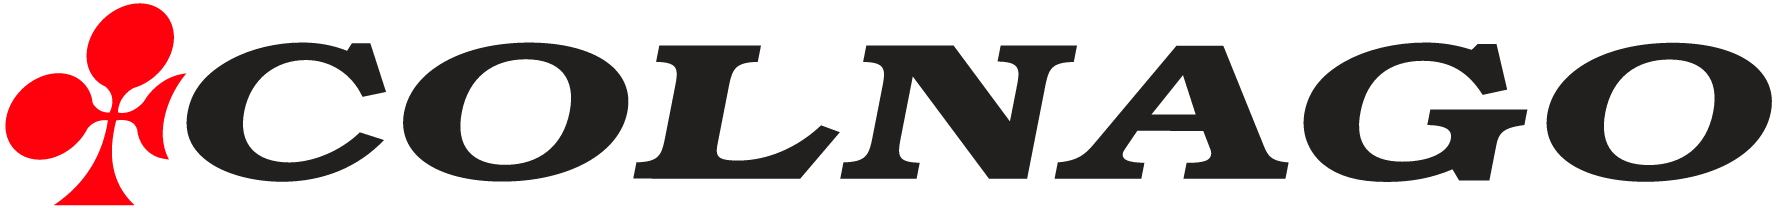 Colnago-Logo